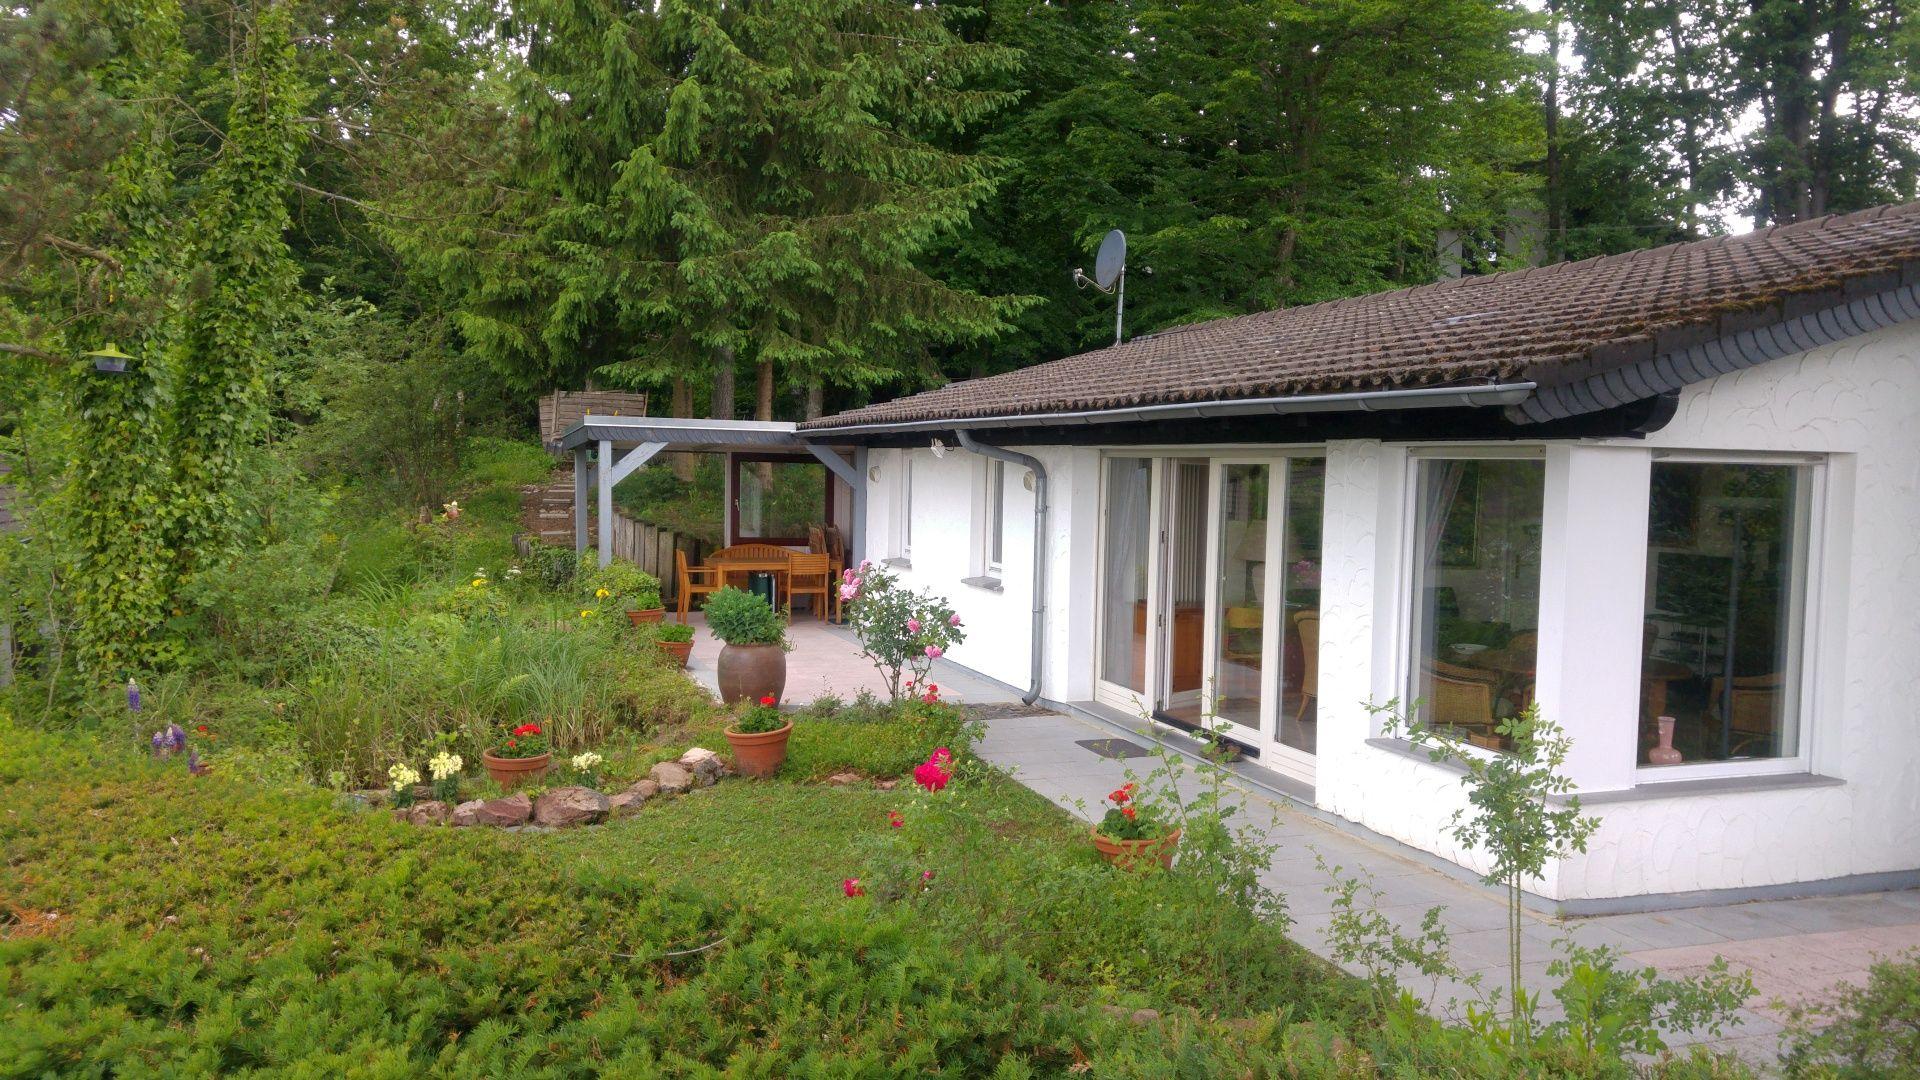 Wunderschönes freistehendes Ferienhaus mit So Ferienhaus in Deutschland